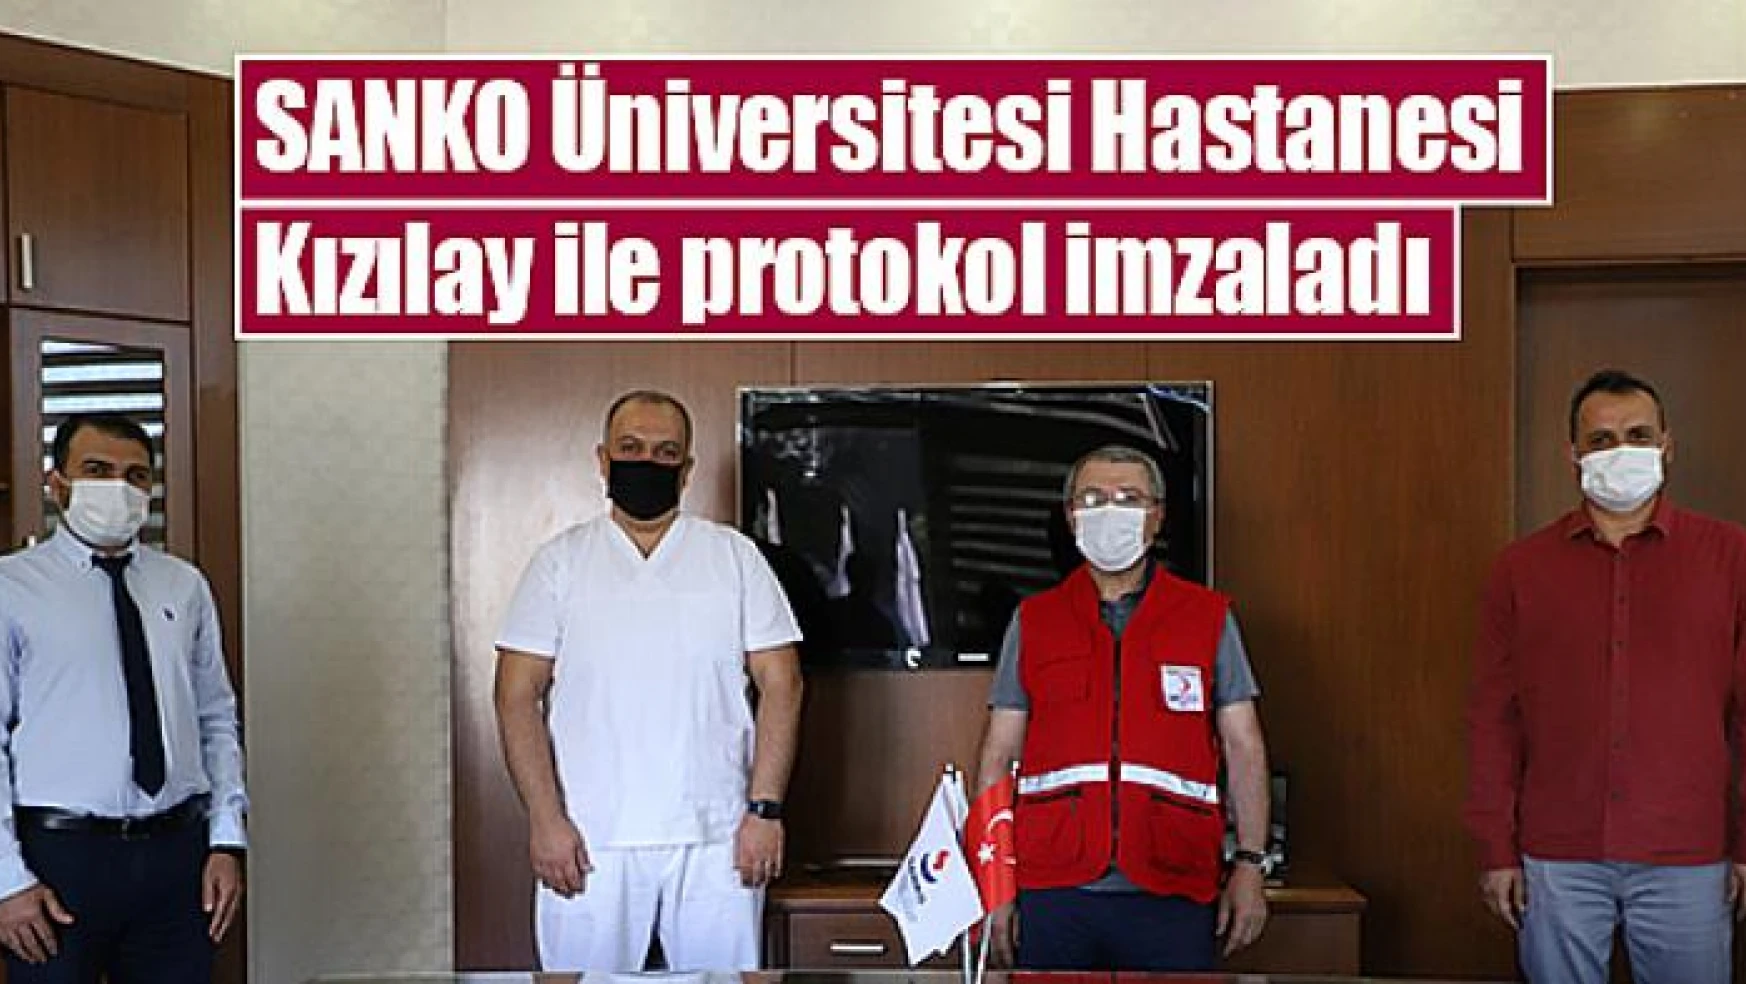 SANKO Üniversitesi Hastanesi Kızılay ile protokol imzaladı